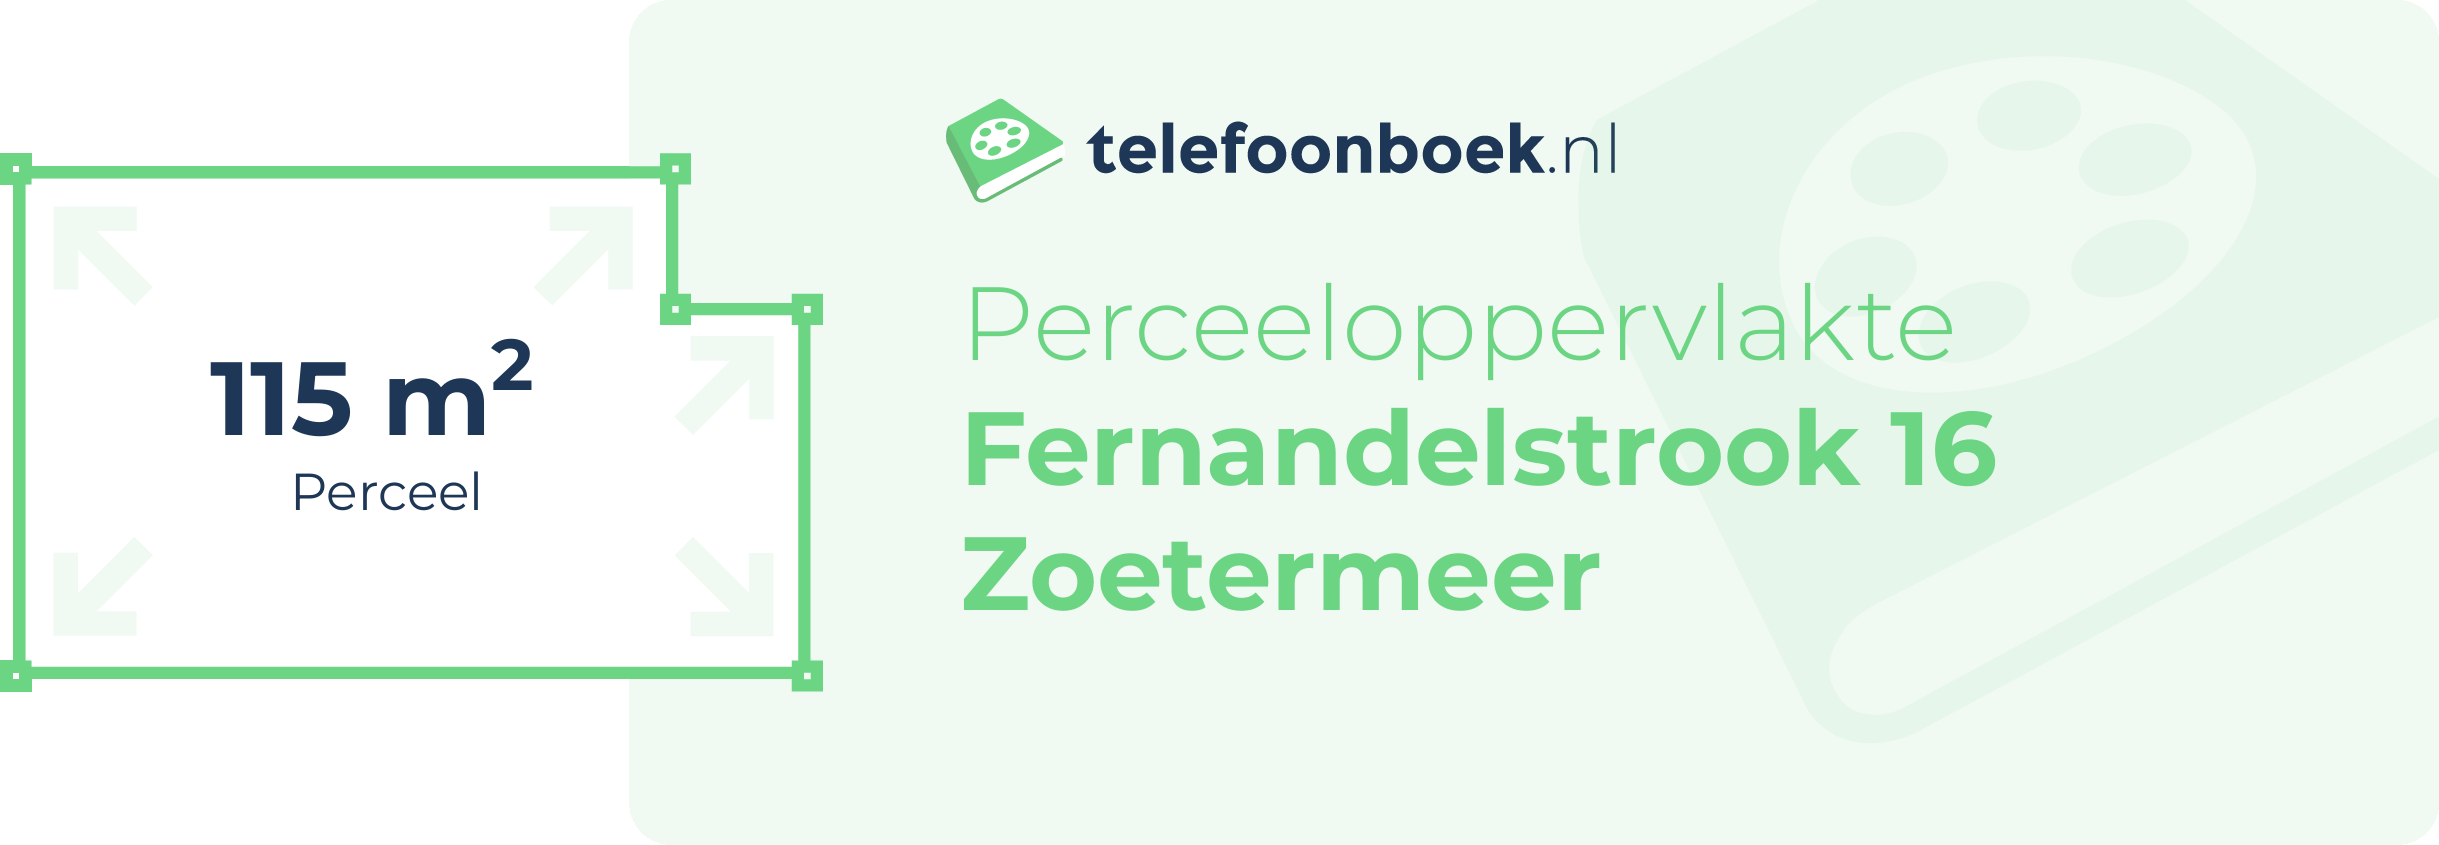 Perceeloppervlakte Fernandelstrook 16 Zoetermeer